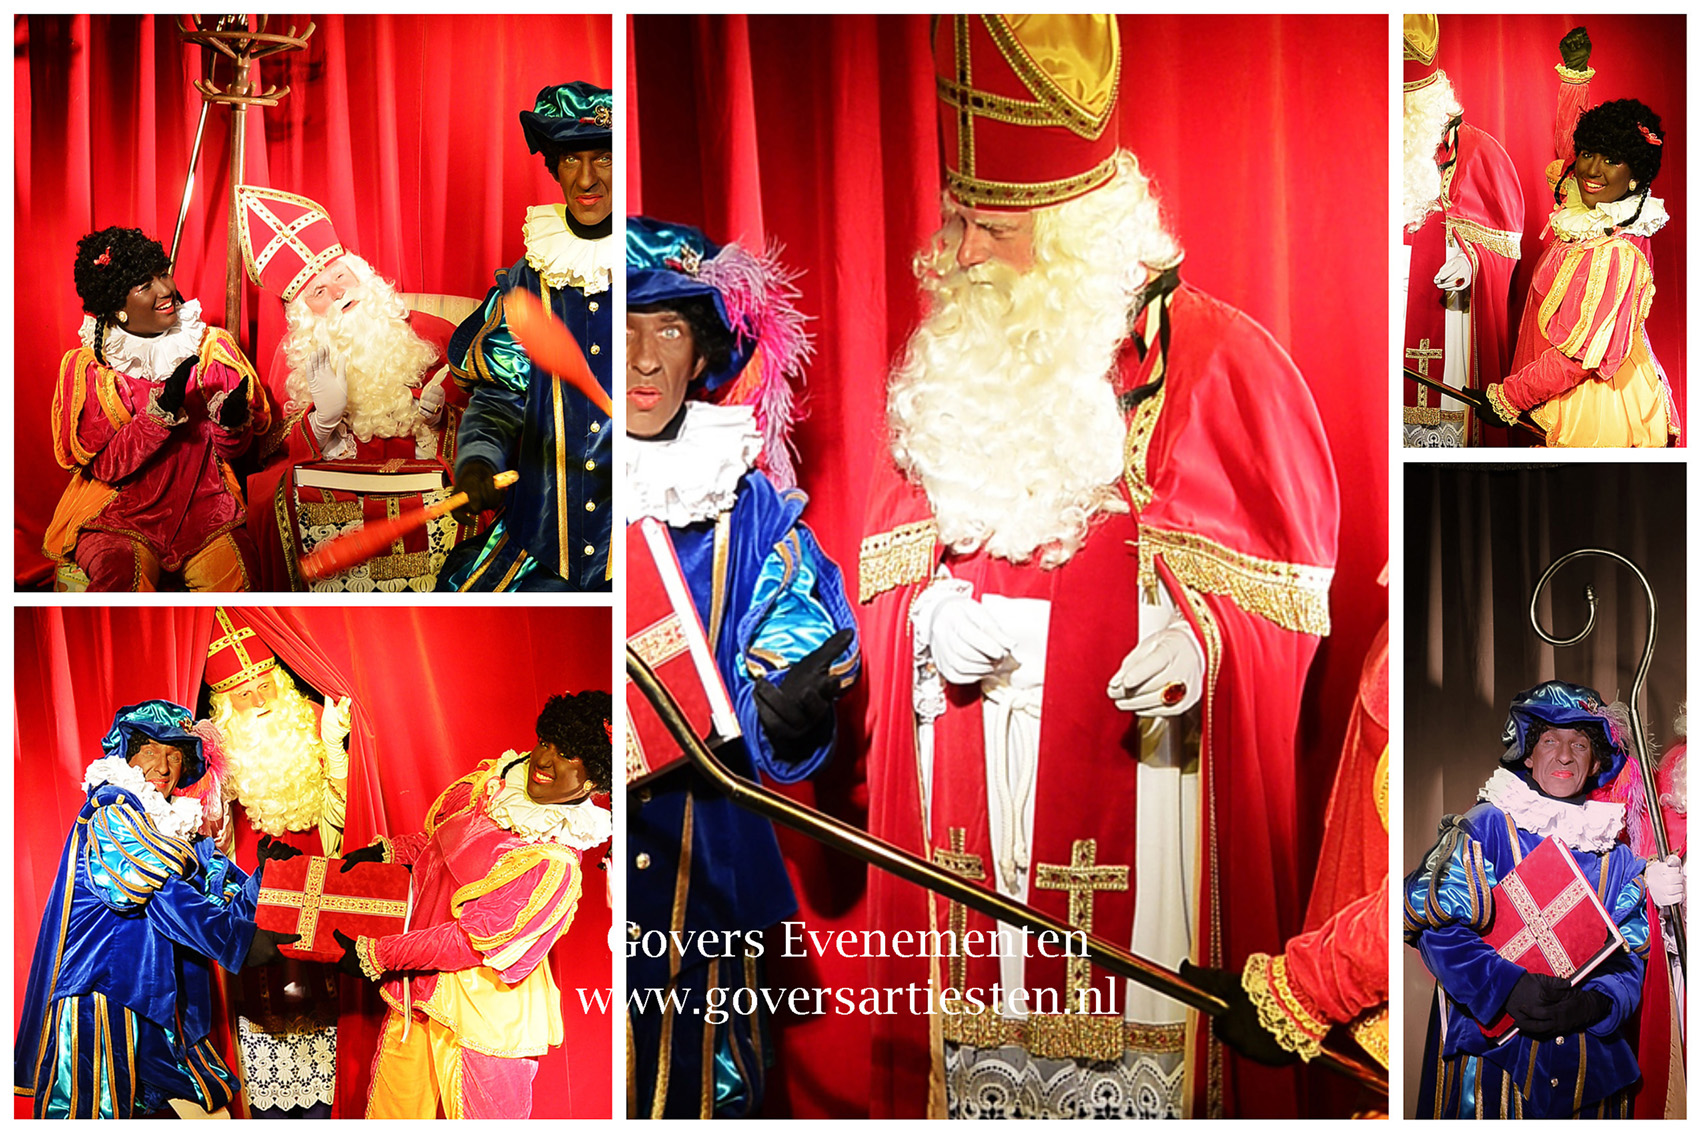 De Sinterklaas op visite Show, sint, sint en piet, sinterklaas, jongleur, goochelen, kadootjes, govers evenementen